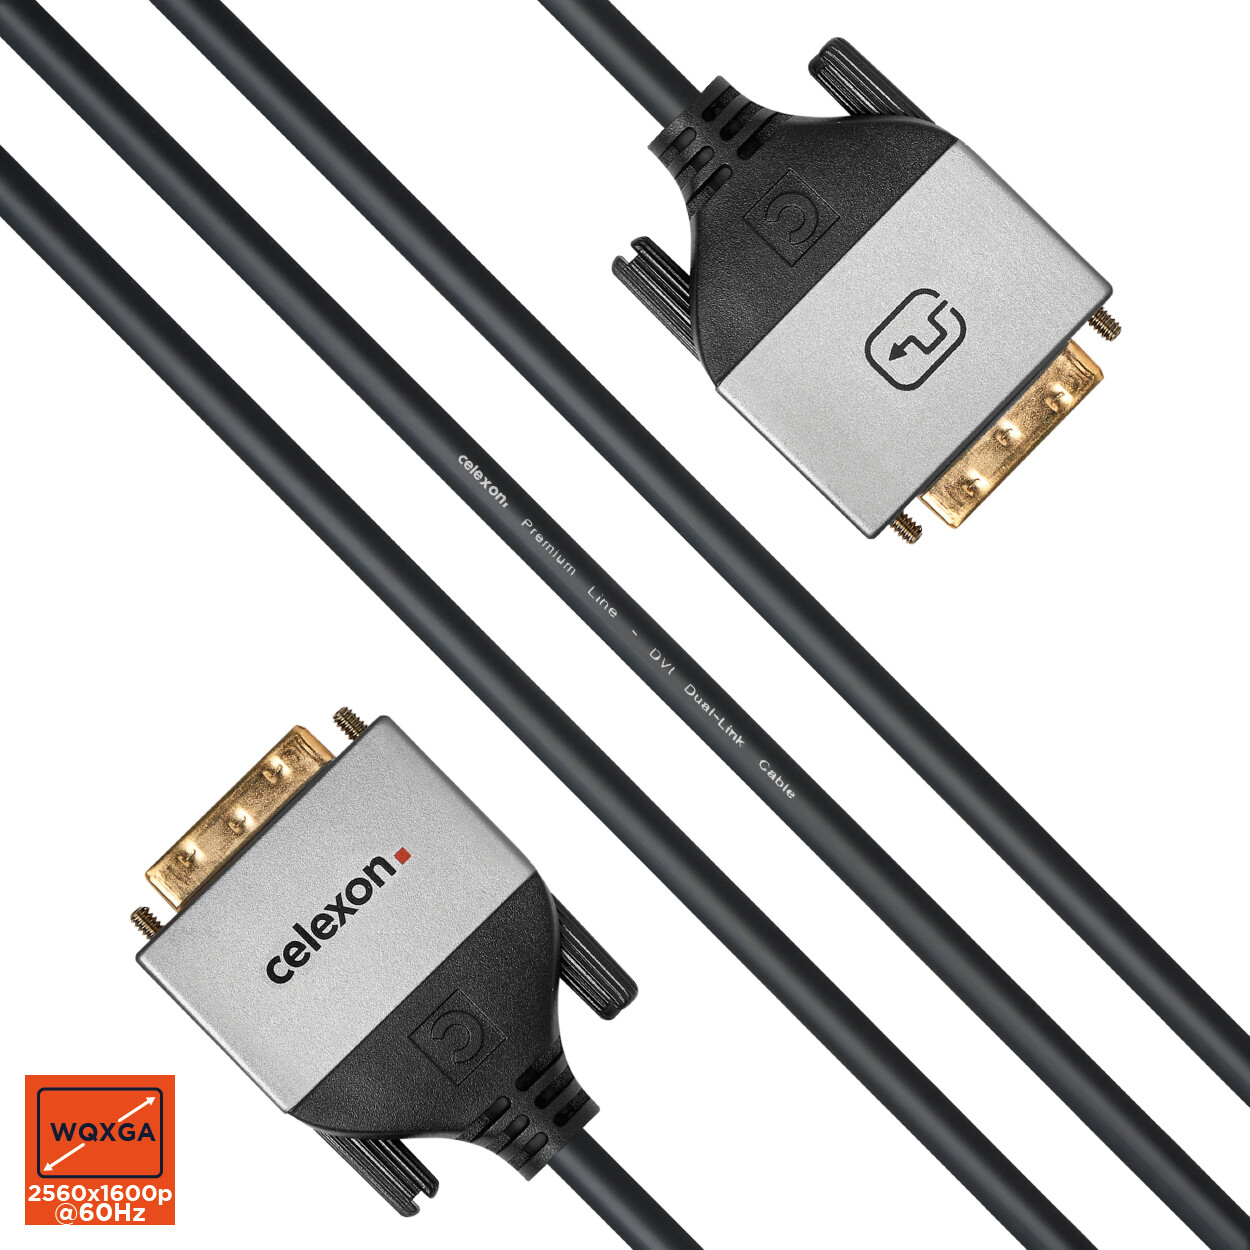 celexon-DVI-Dual-Link-Kabel-2-0m-Professional-Line